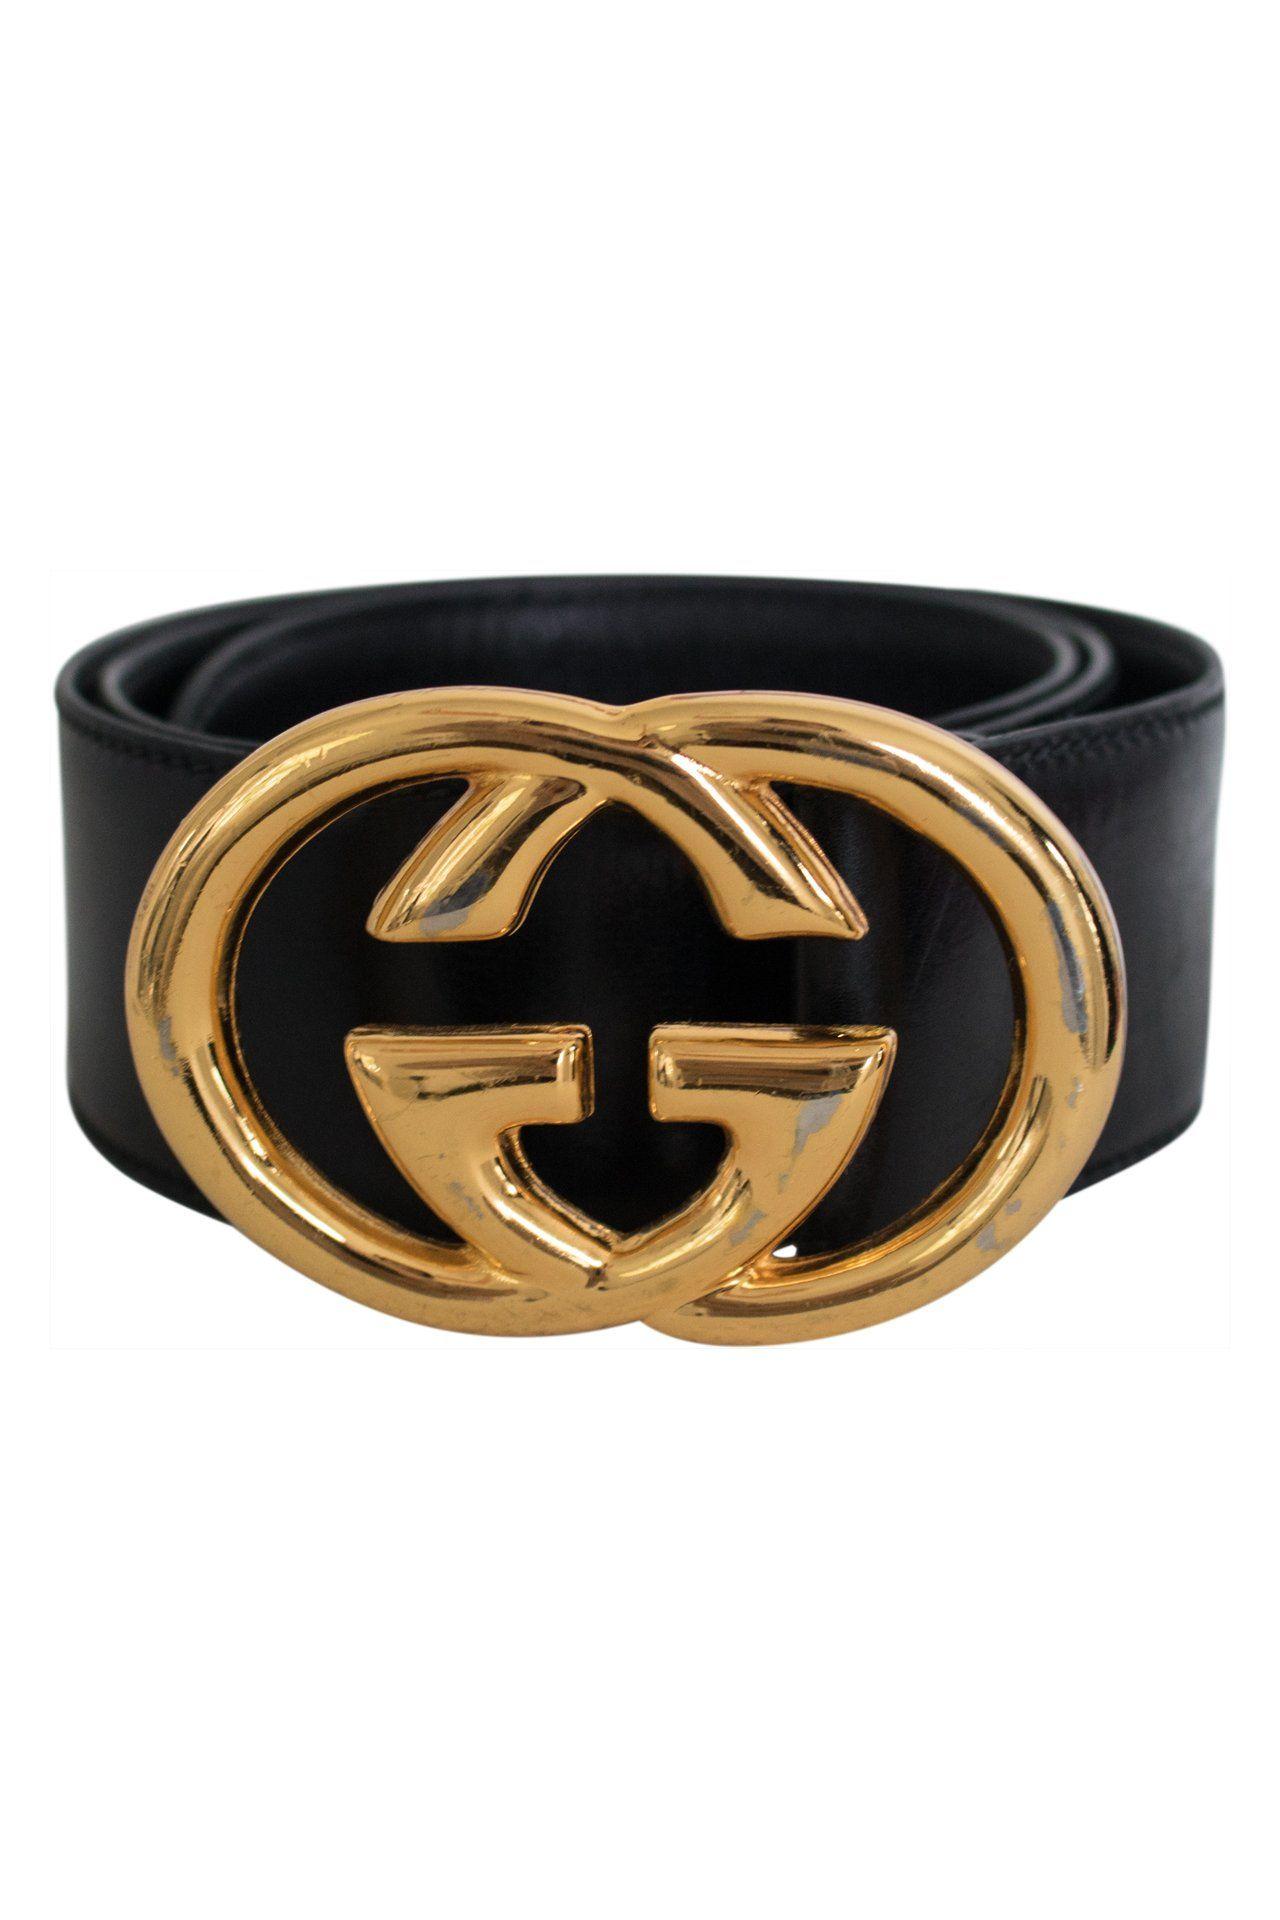 Vintage Gucci Logo - Vintage Gucci Belt with Large Gold Logo